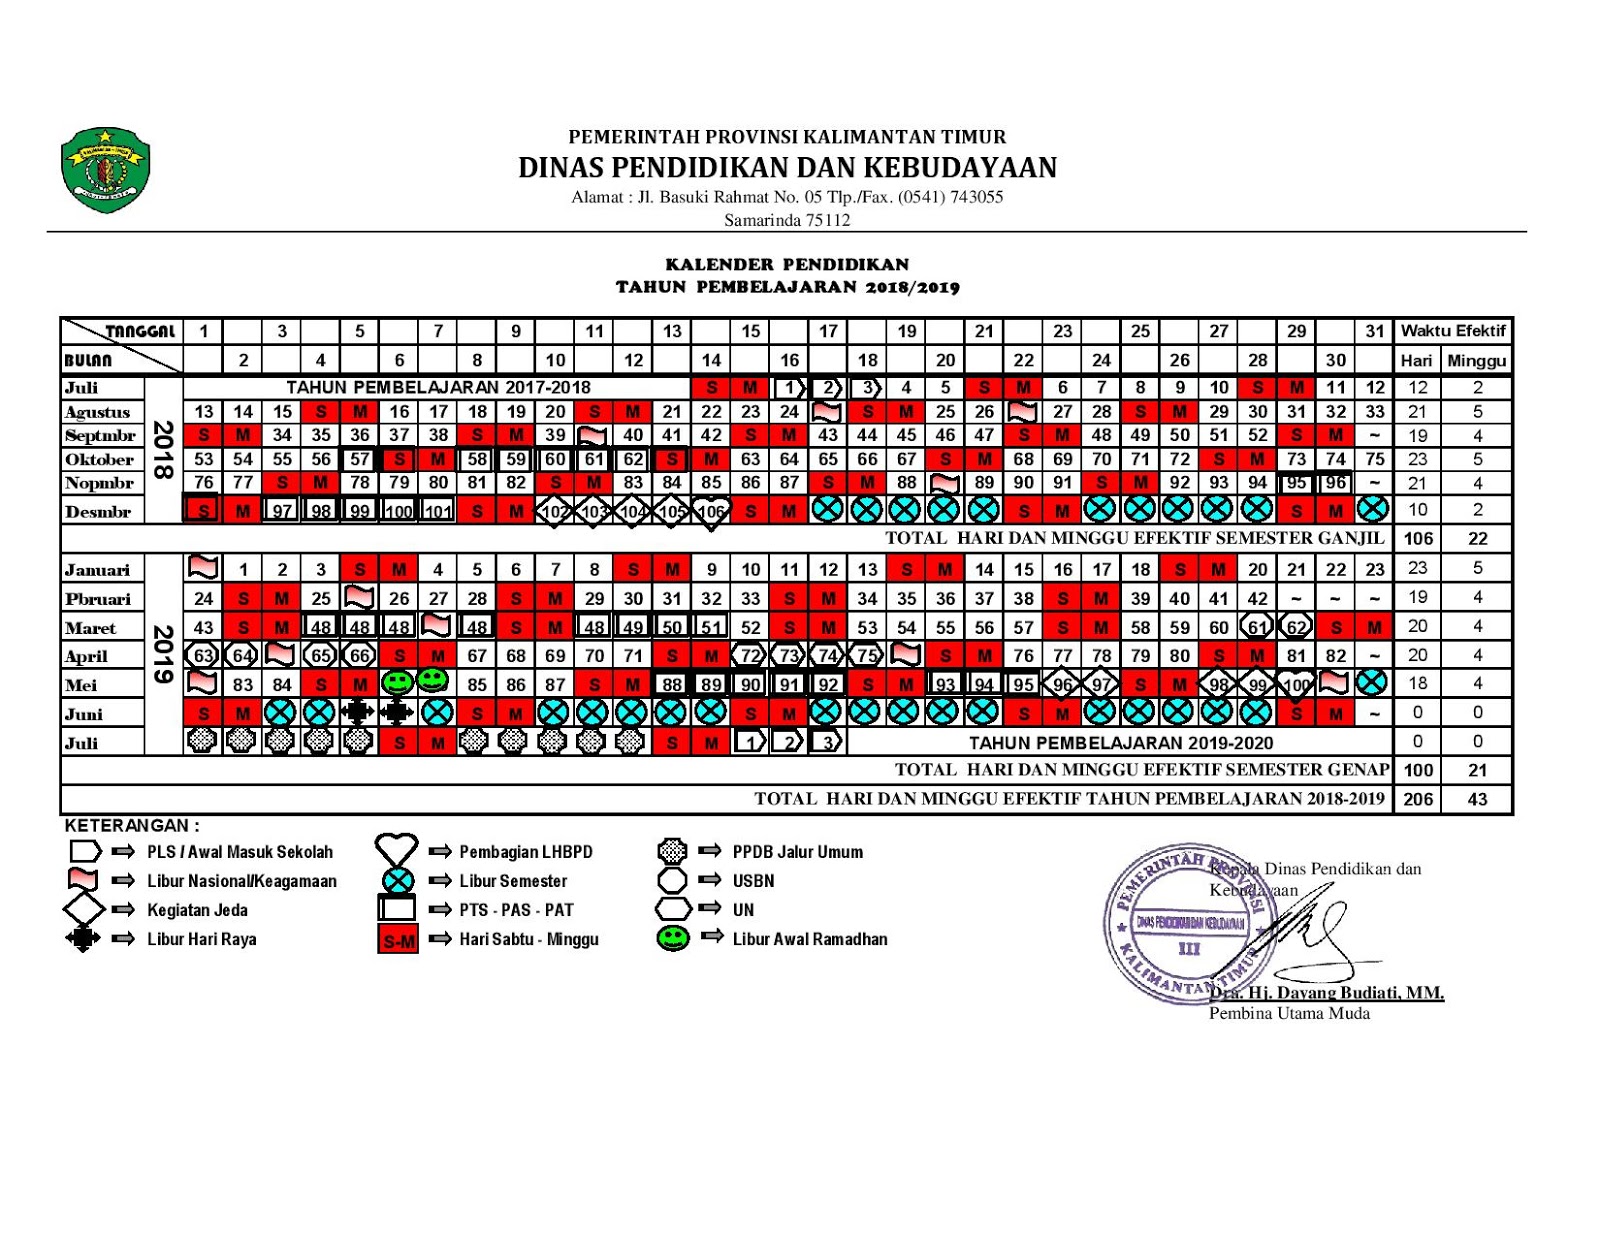 INFORMASI PENDIDIKAN TOP Kalender Pendidikan 2018 2019 Kalimantan Timur